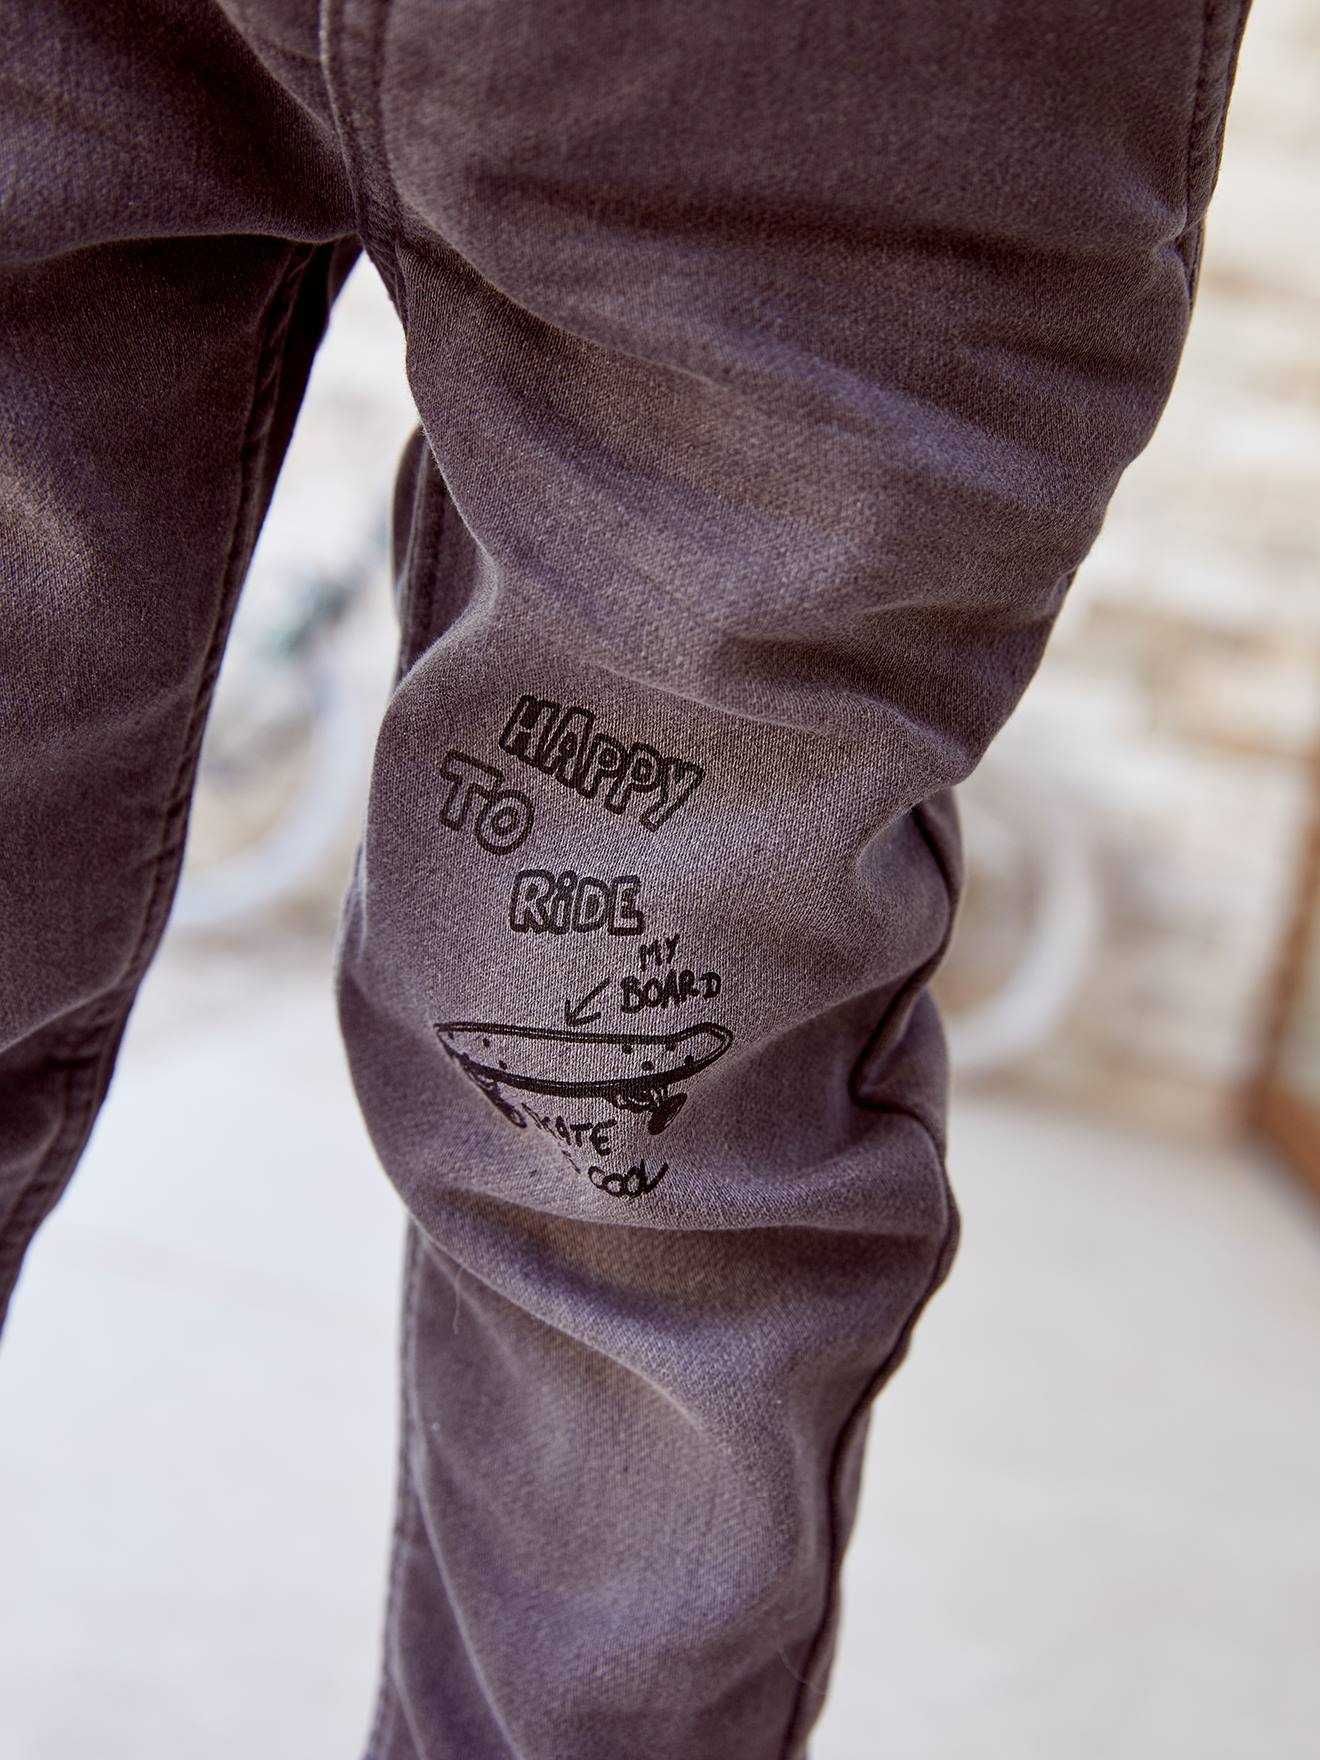 Джинсы, штаны, брюки для мальчика Vertbaudet, размер 7-8 лет, 122-128